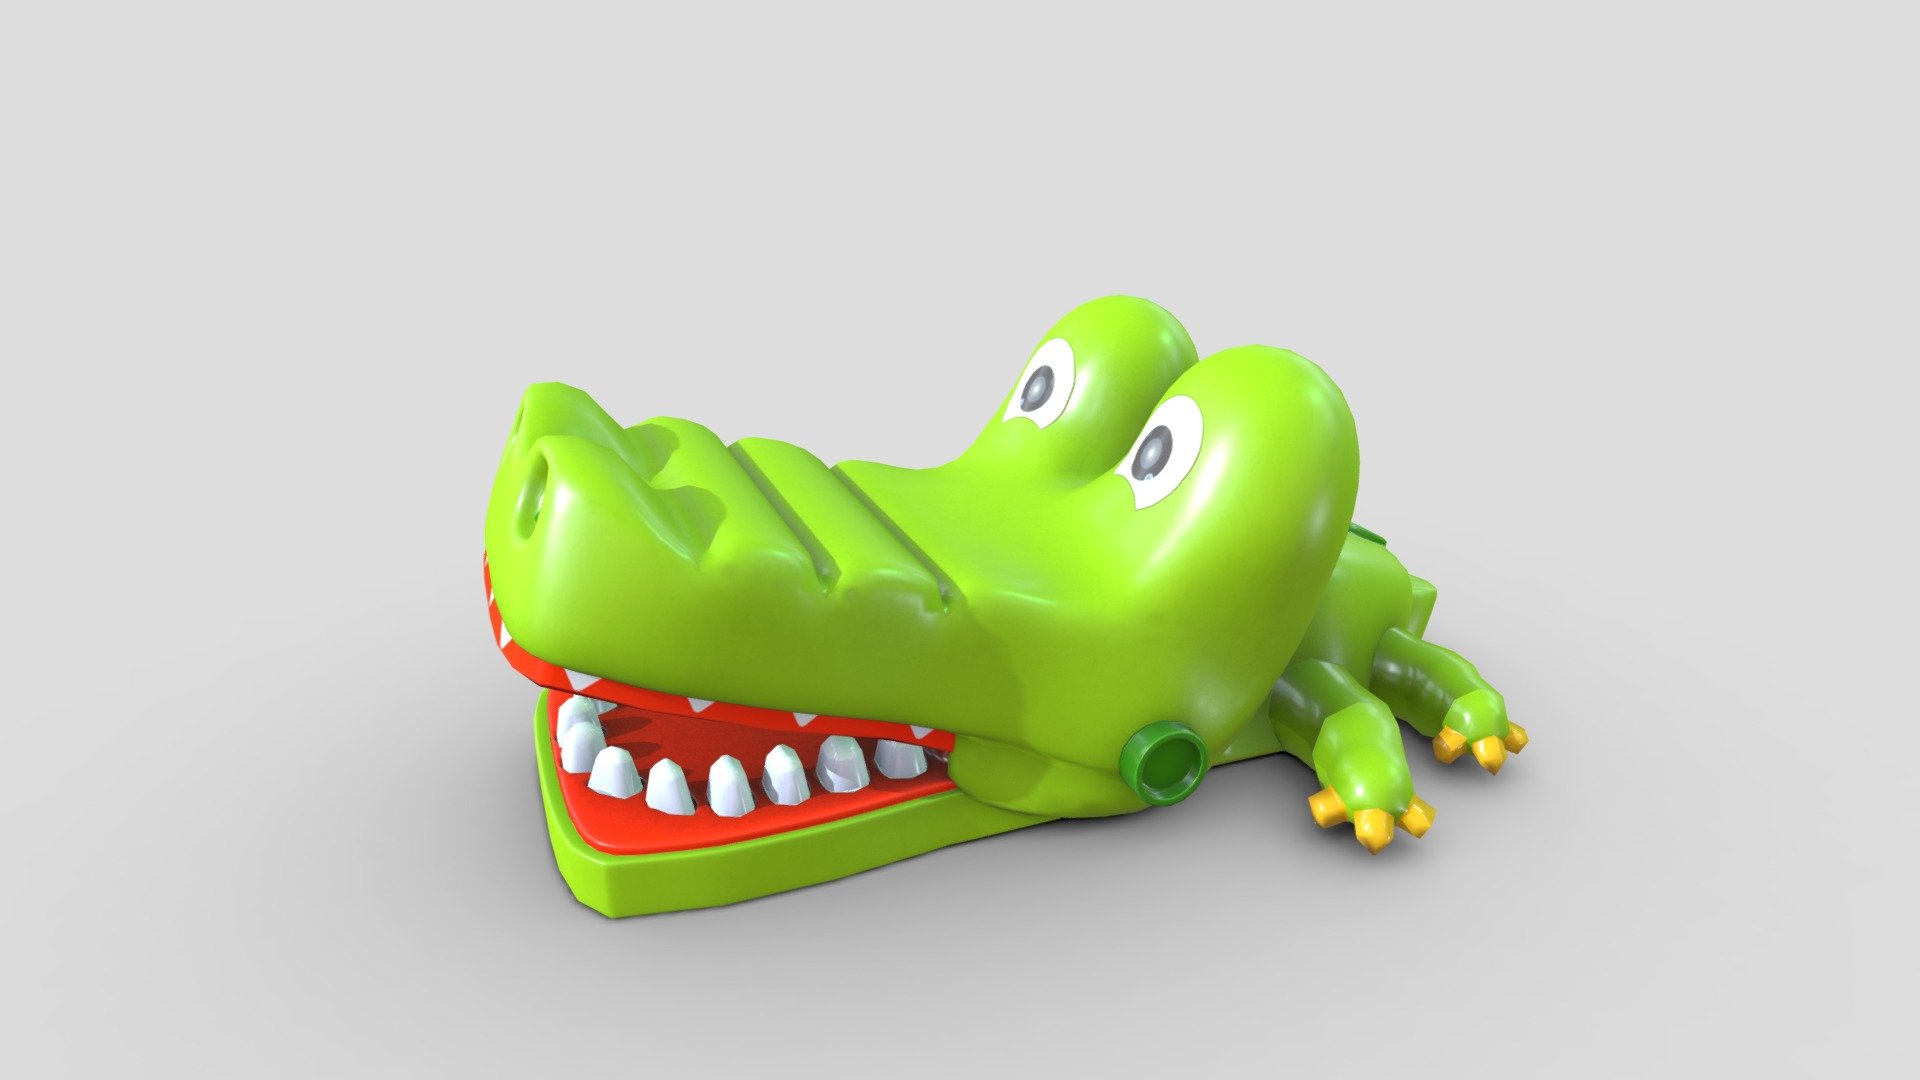 Crocodile toy - 3D model by Ing_eO 3d model